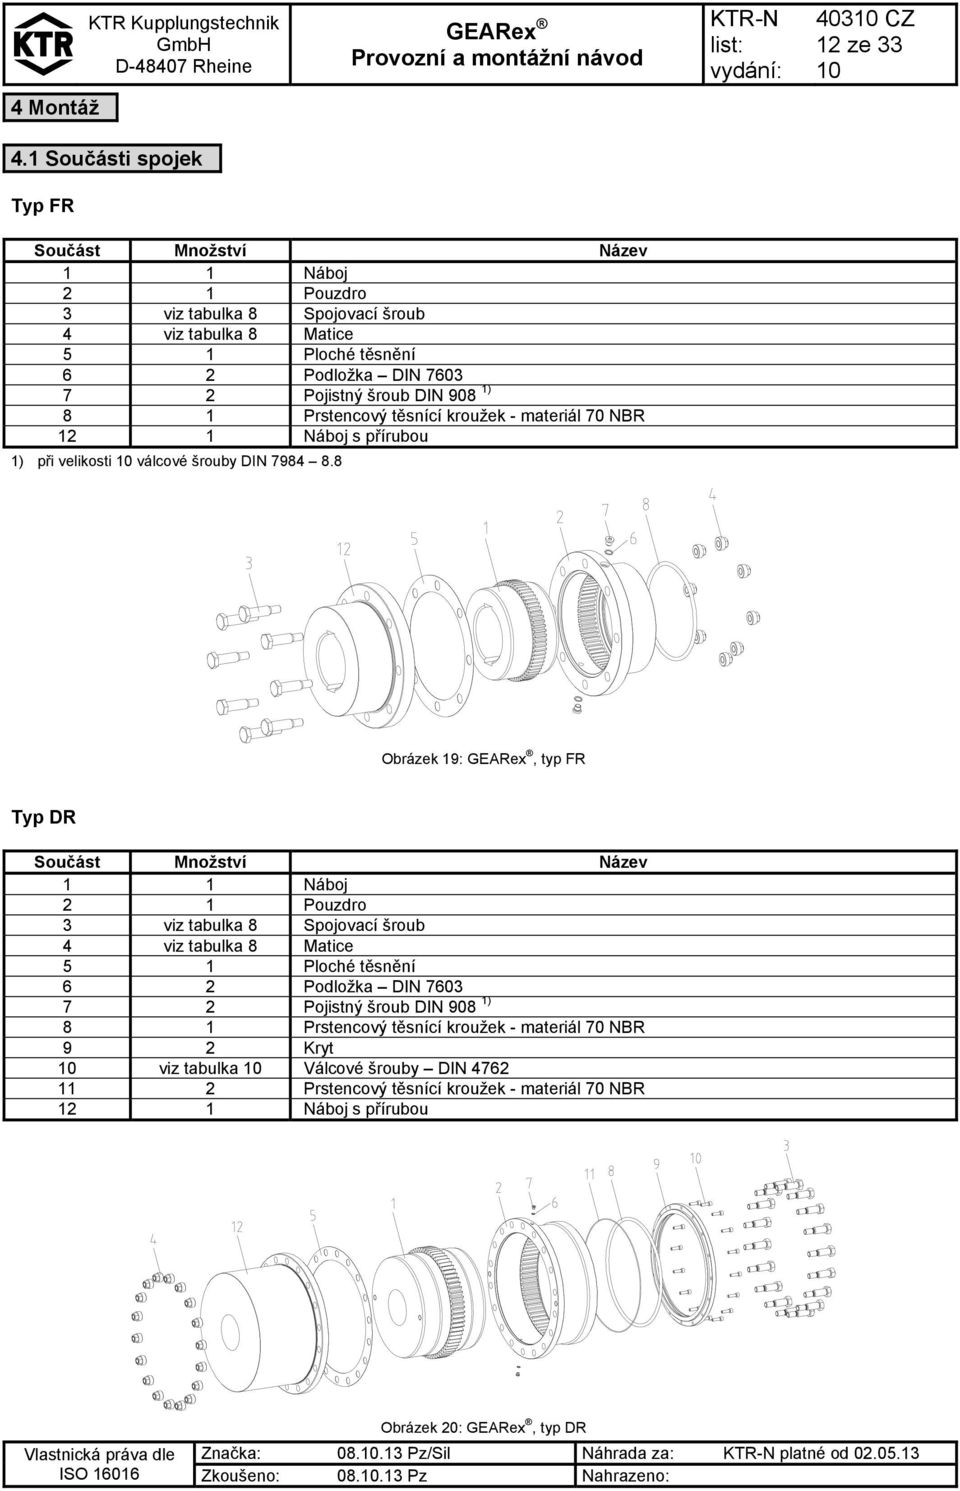 Prstencový těsnící kroužek - materiál 70 NBR 12 1 Náboj s přírubou 1) při velikosti válcové šrouby DIN 7984 8.